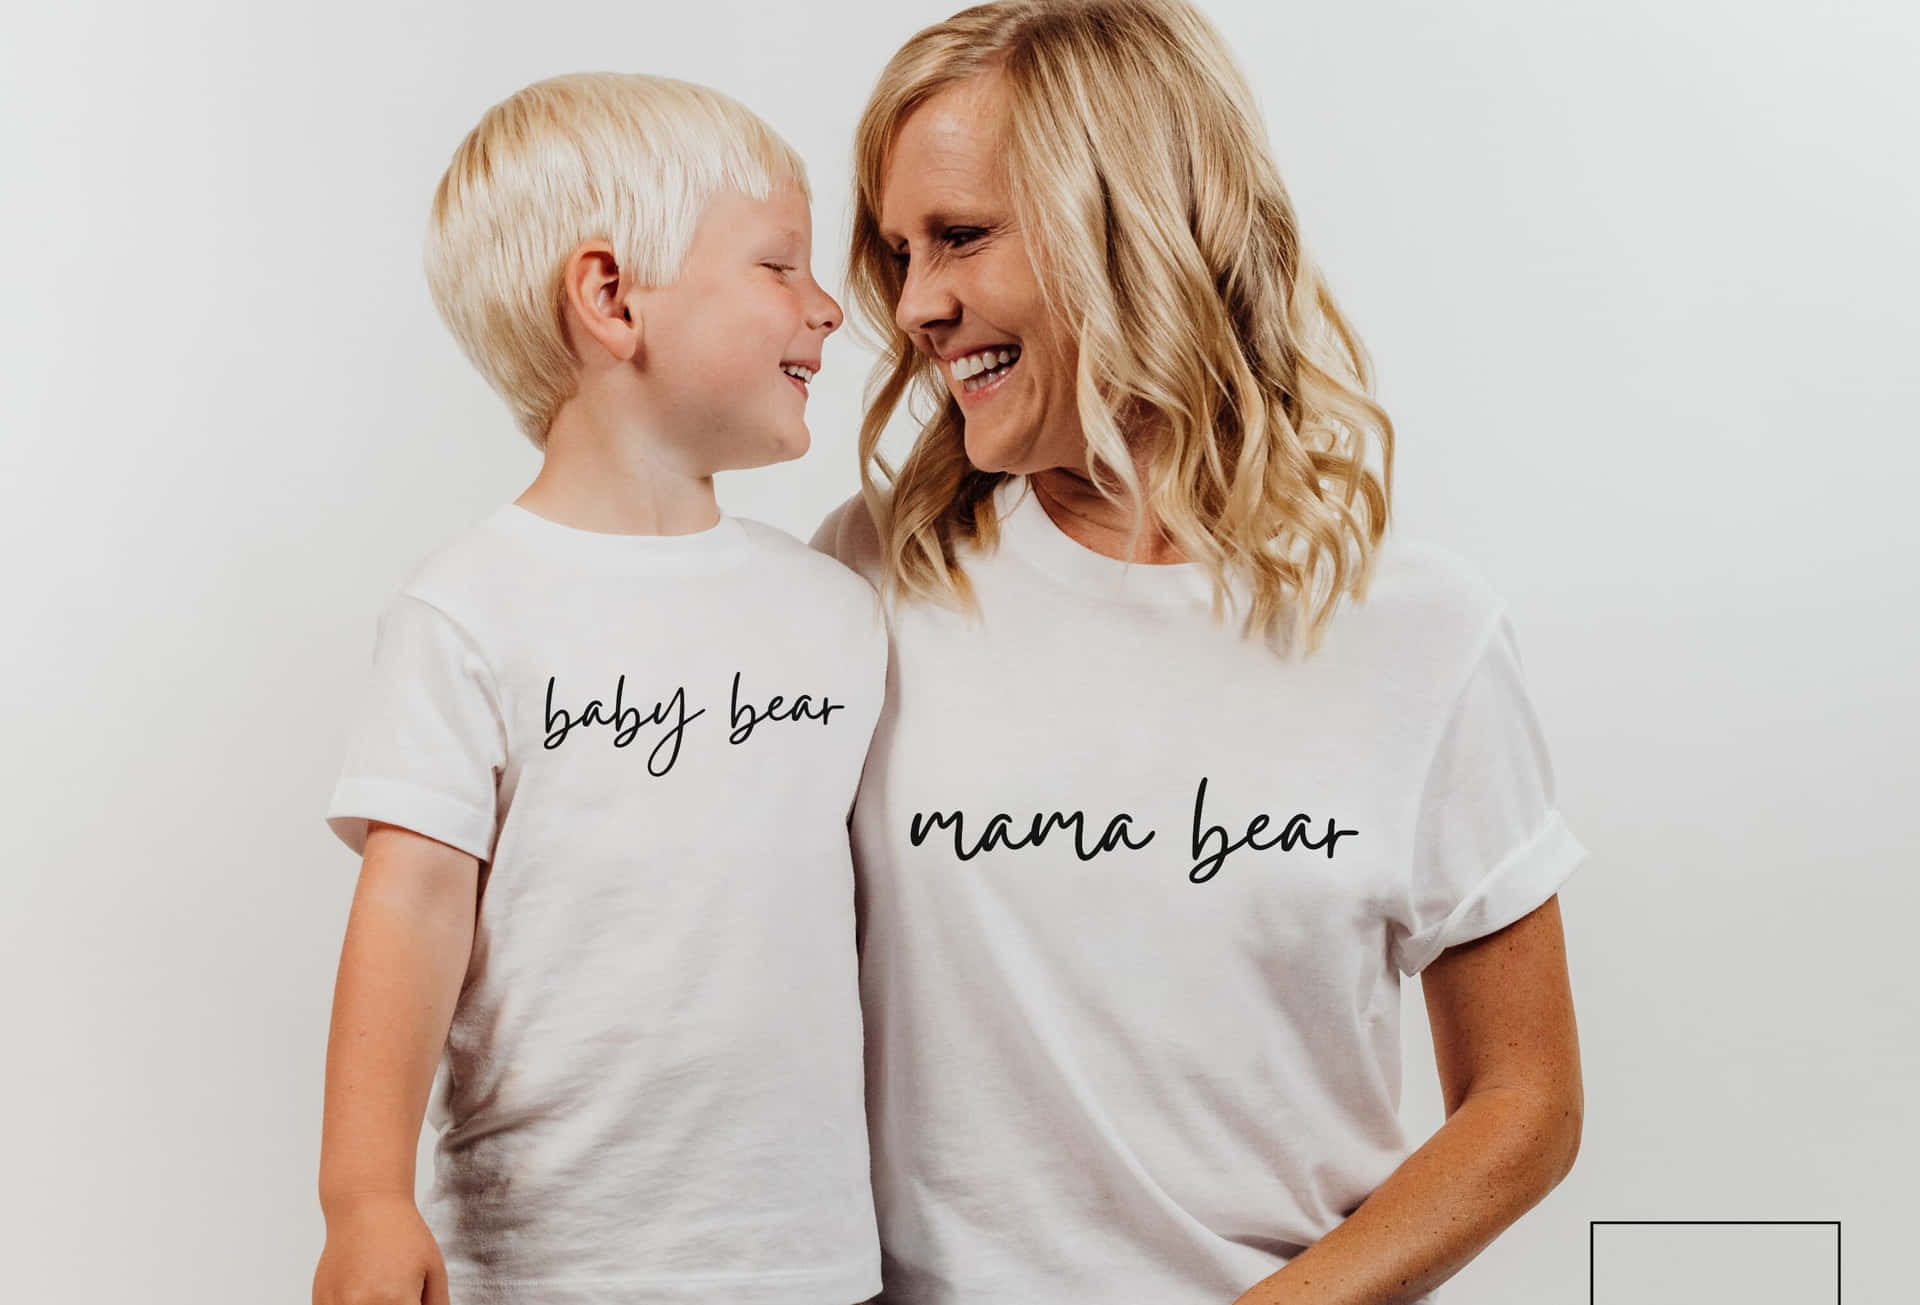 Enmor Og Søn Iført T-shirts, Der Siger Baby Mama Bear.